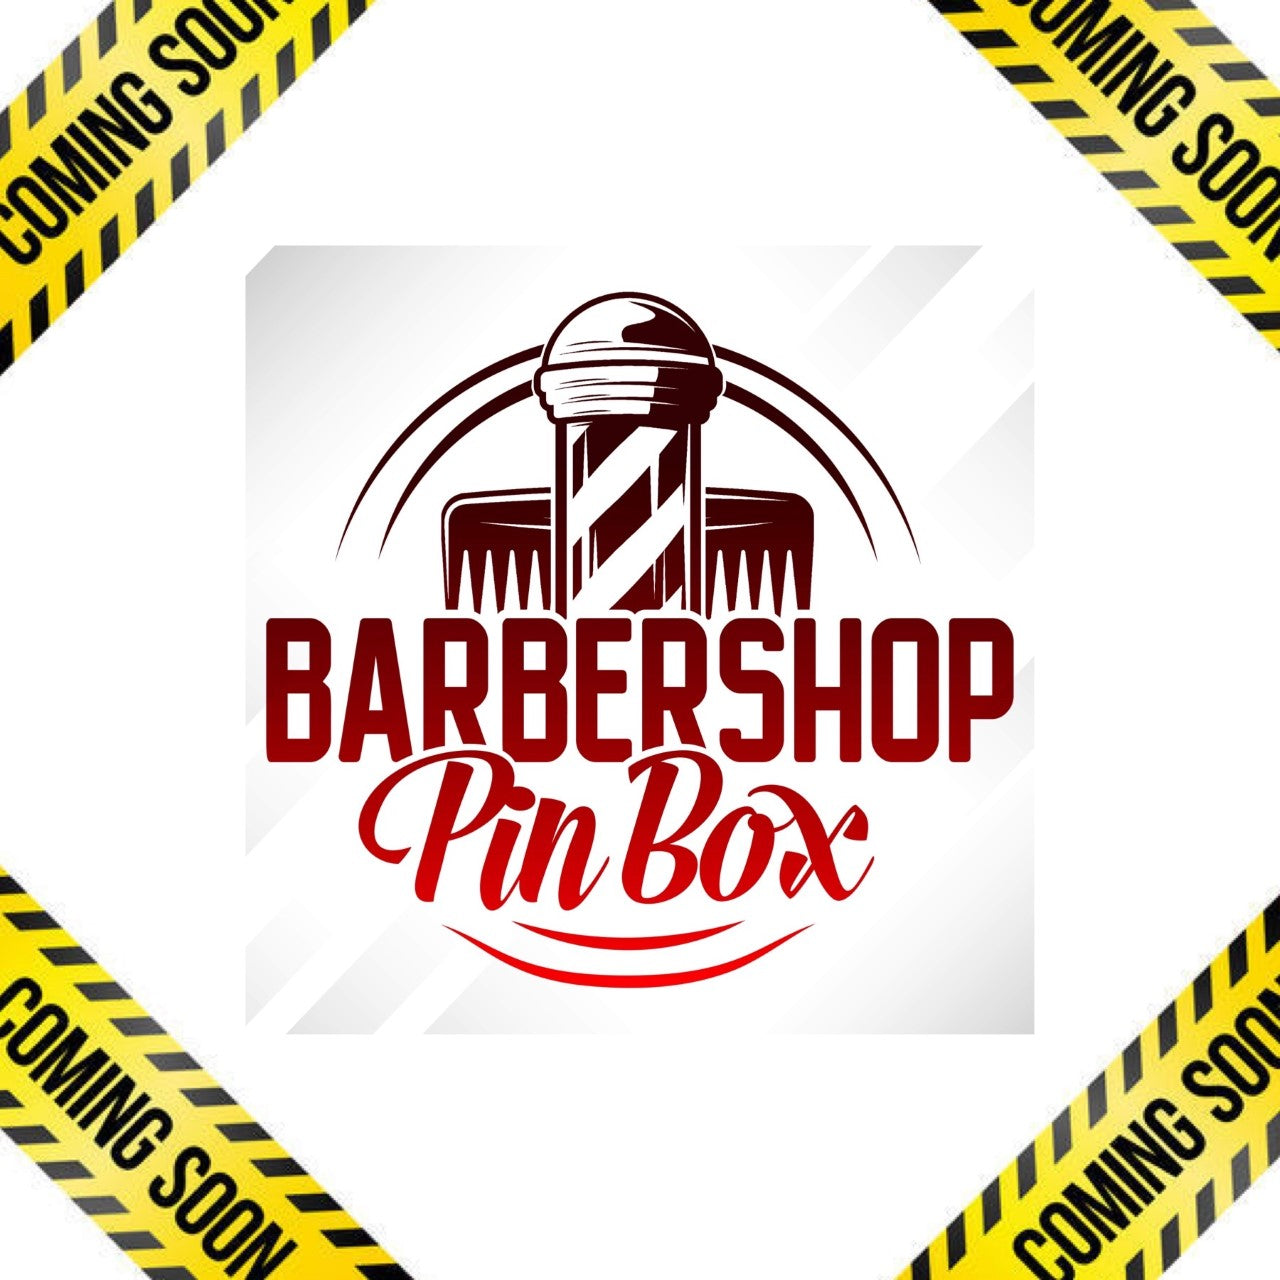 Barber Shop Pin Box (COMING SOON)